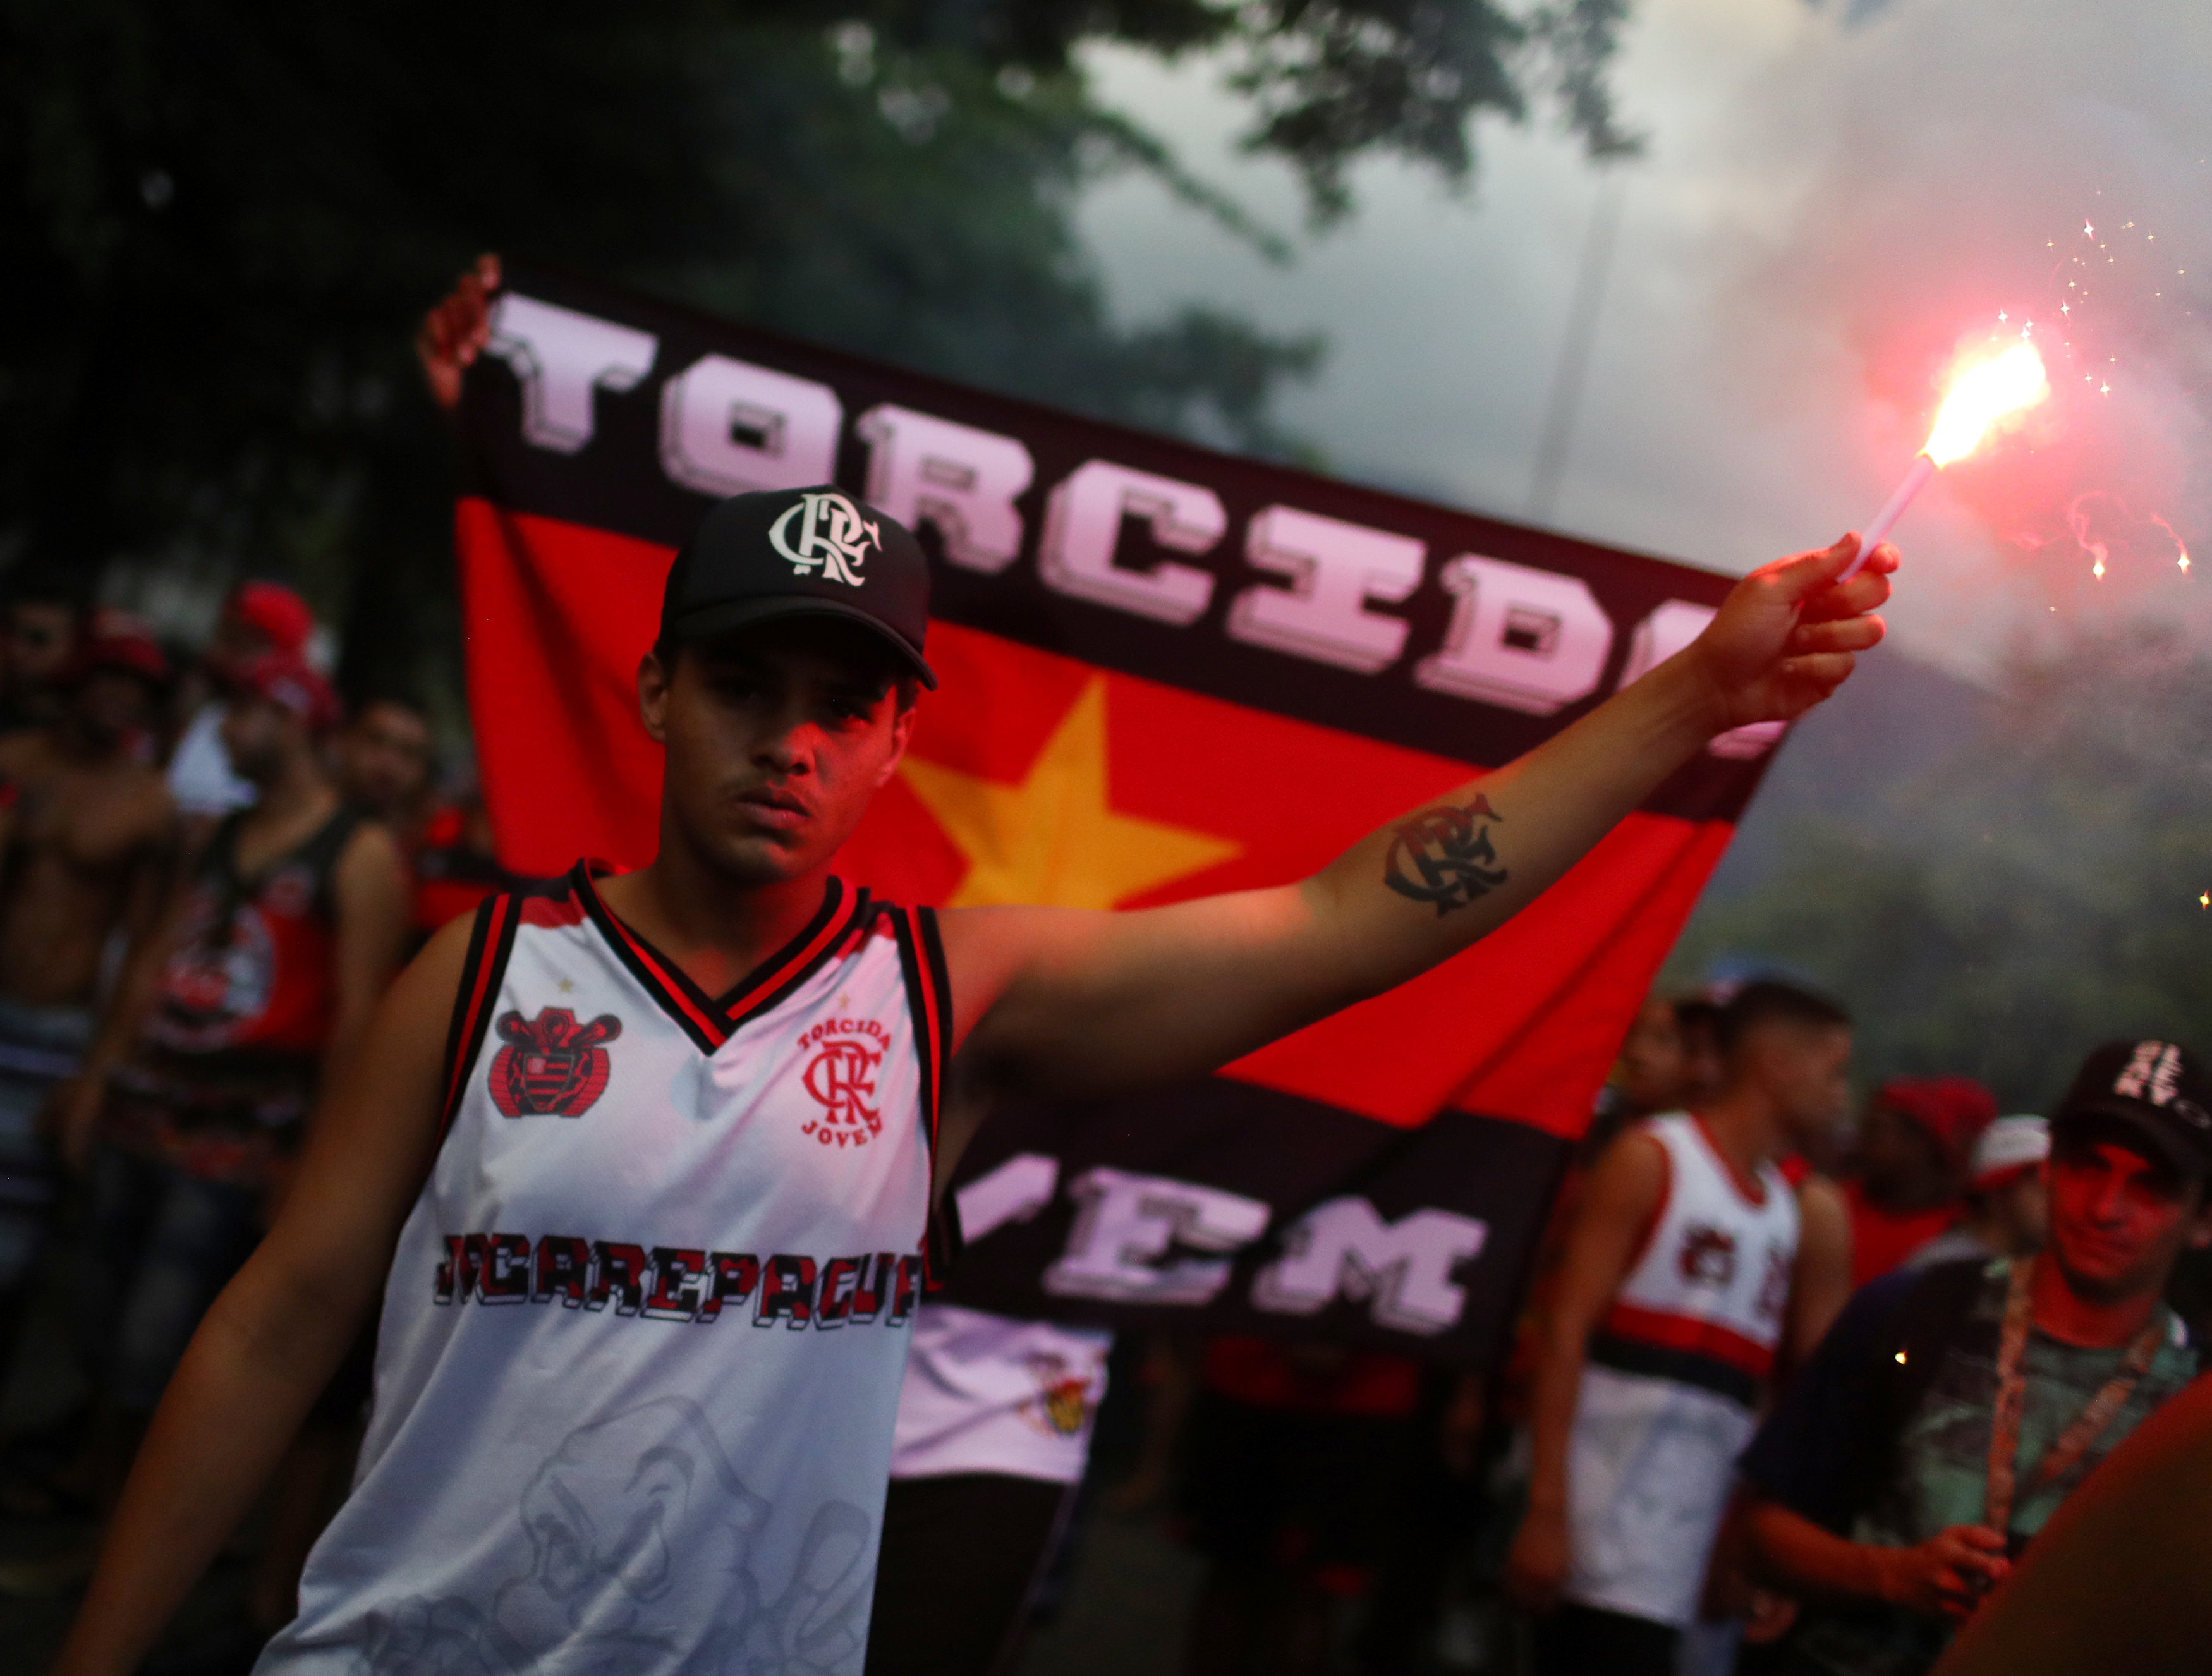 Hinchas del Flamengo rinden homenaje a los diez juveniles fallecidos durante incendio (Fotos y videos)